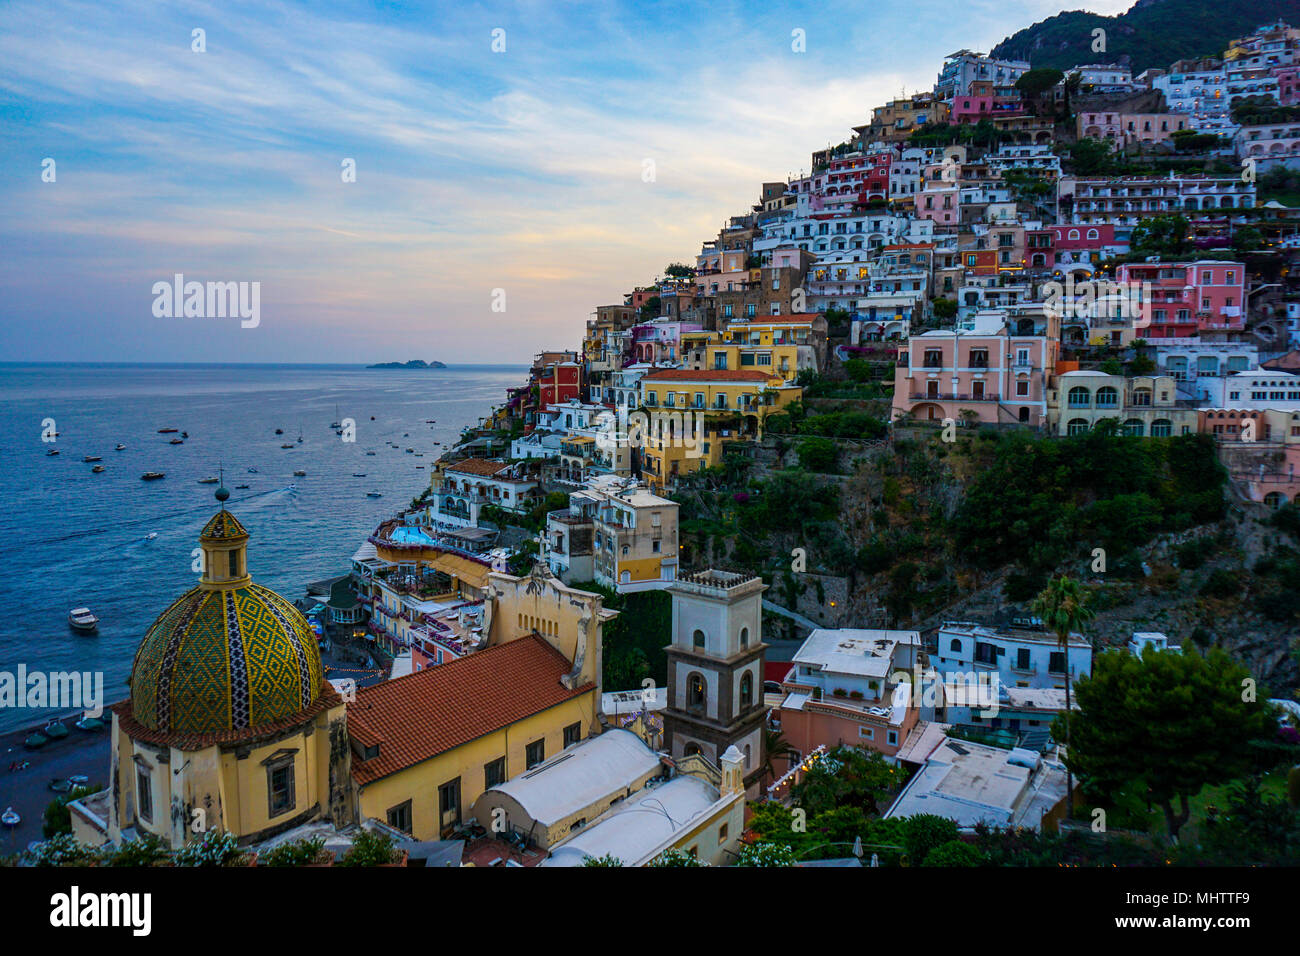 Vista de Positano, Amalfi Coast, Italia al atardecer con el domo de la Chiesa di Santa Maria Assunta en primer plano Foto de stock